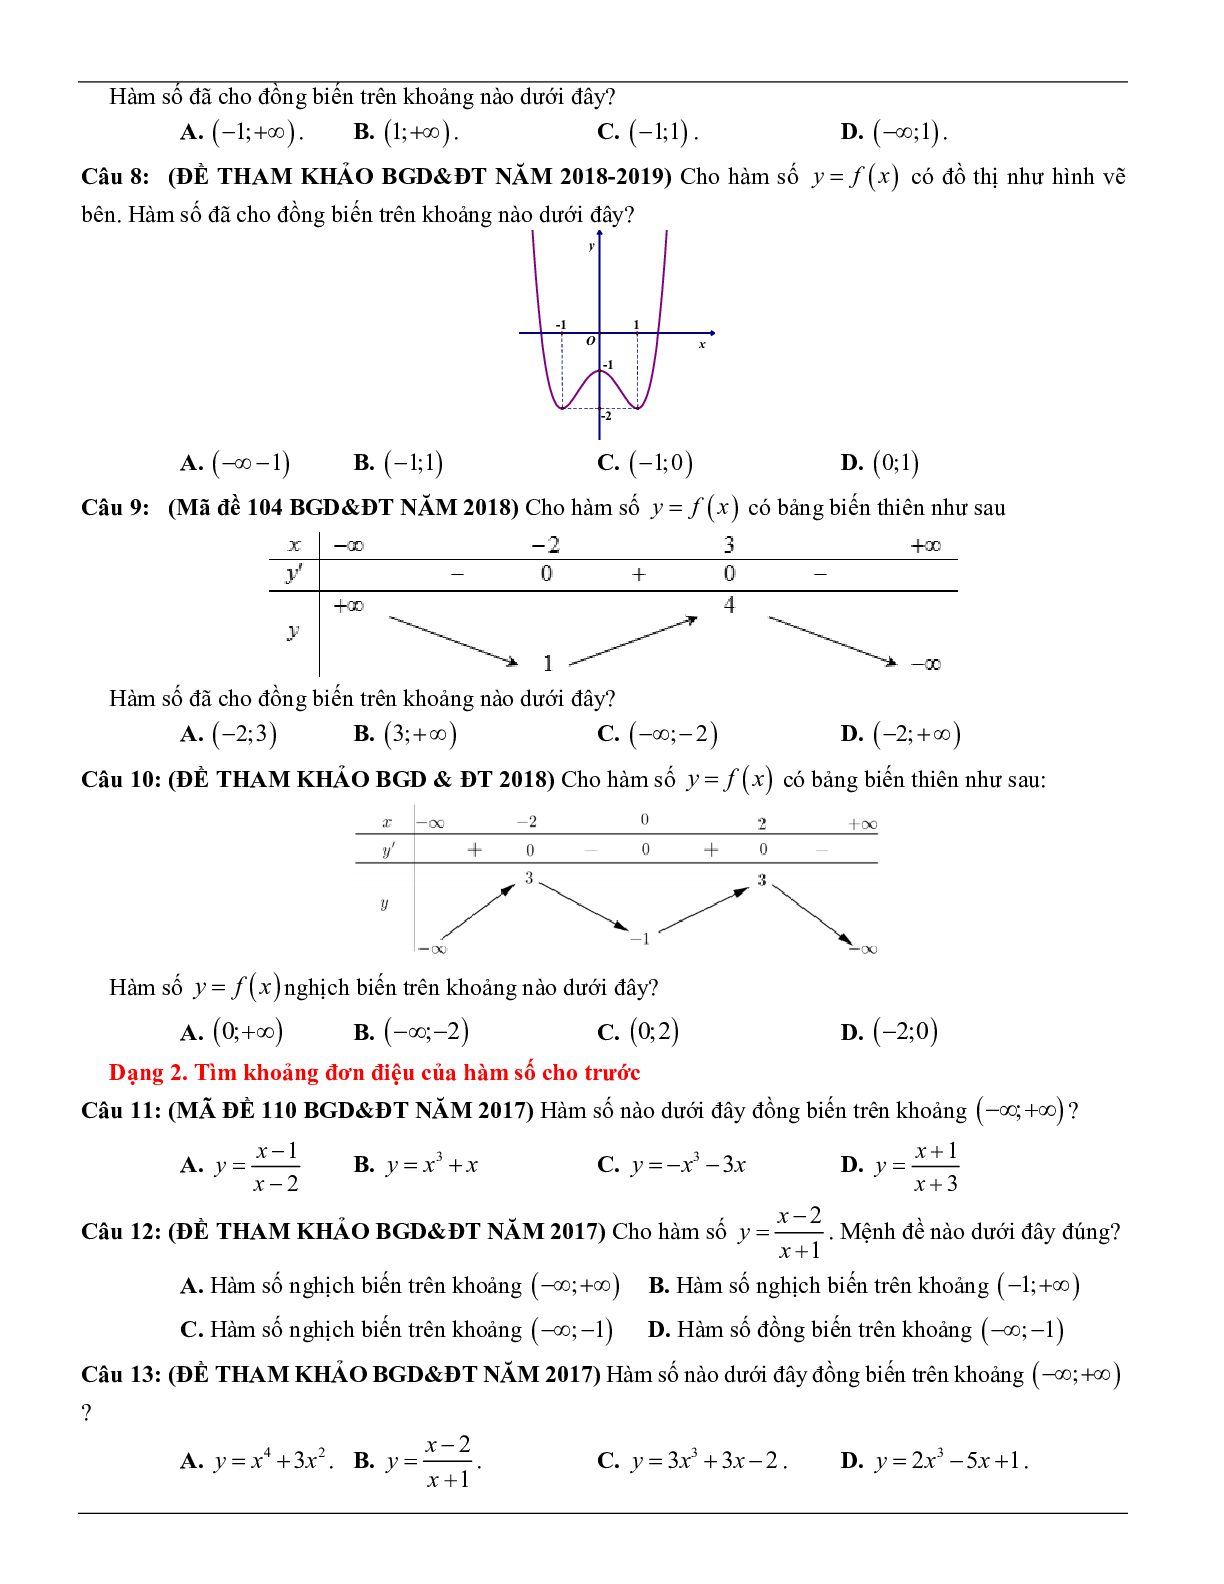 Các dạng toán về tính đơn điệu của hàm số thường gặp trong kỳ thi THPT Quốc gia (trang 3)